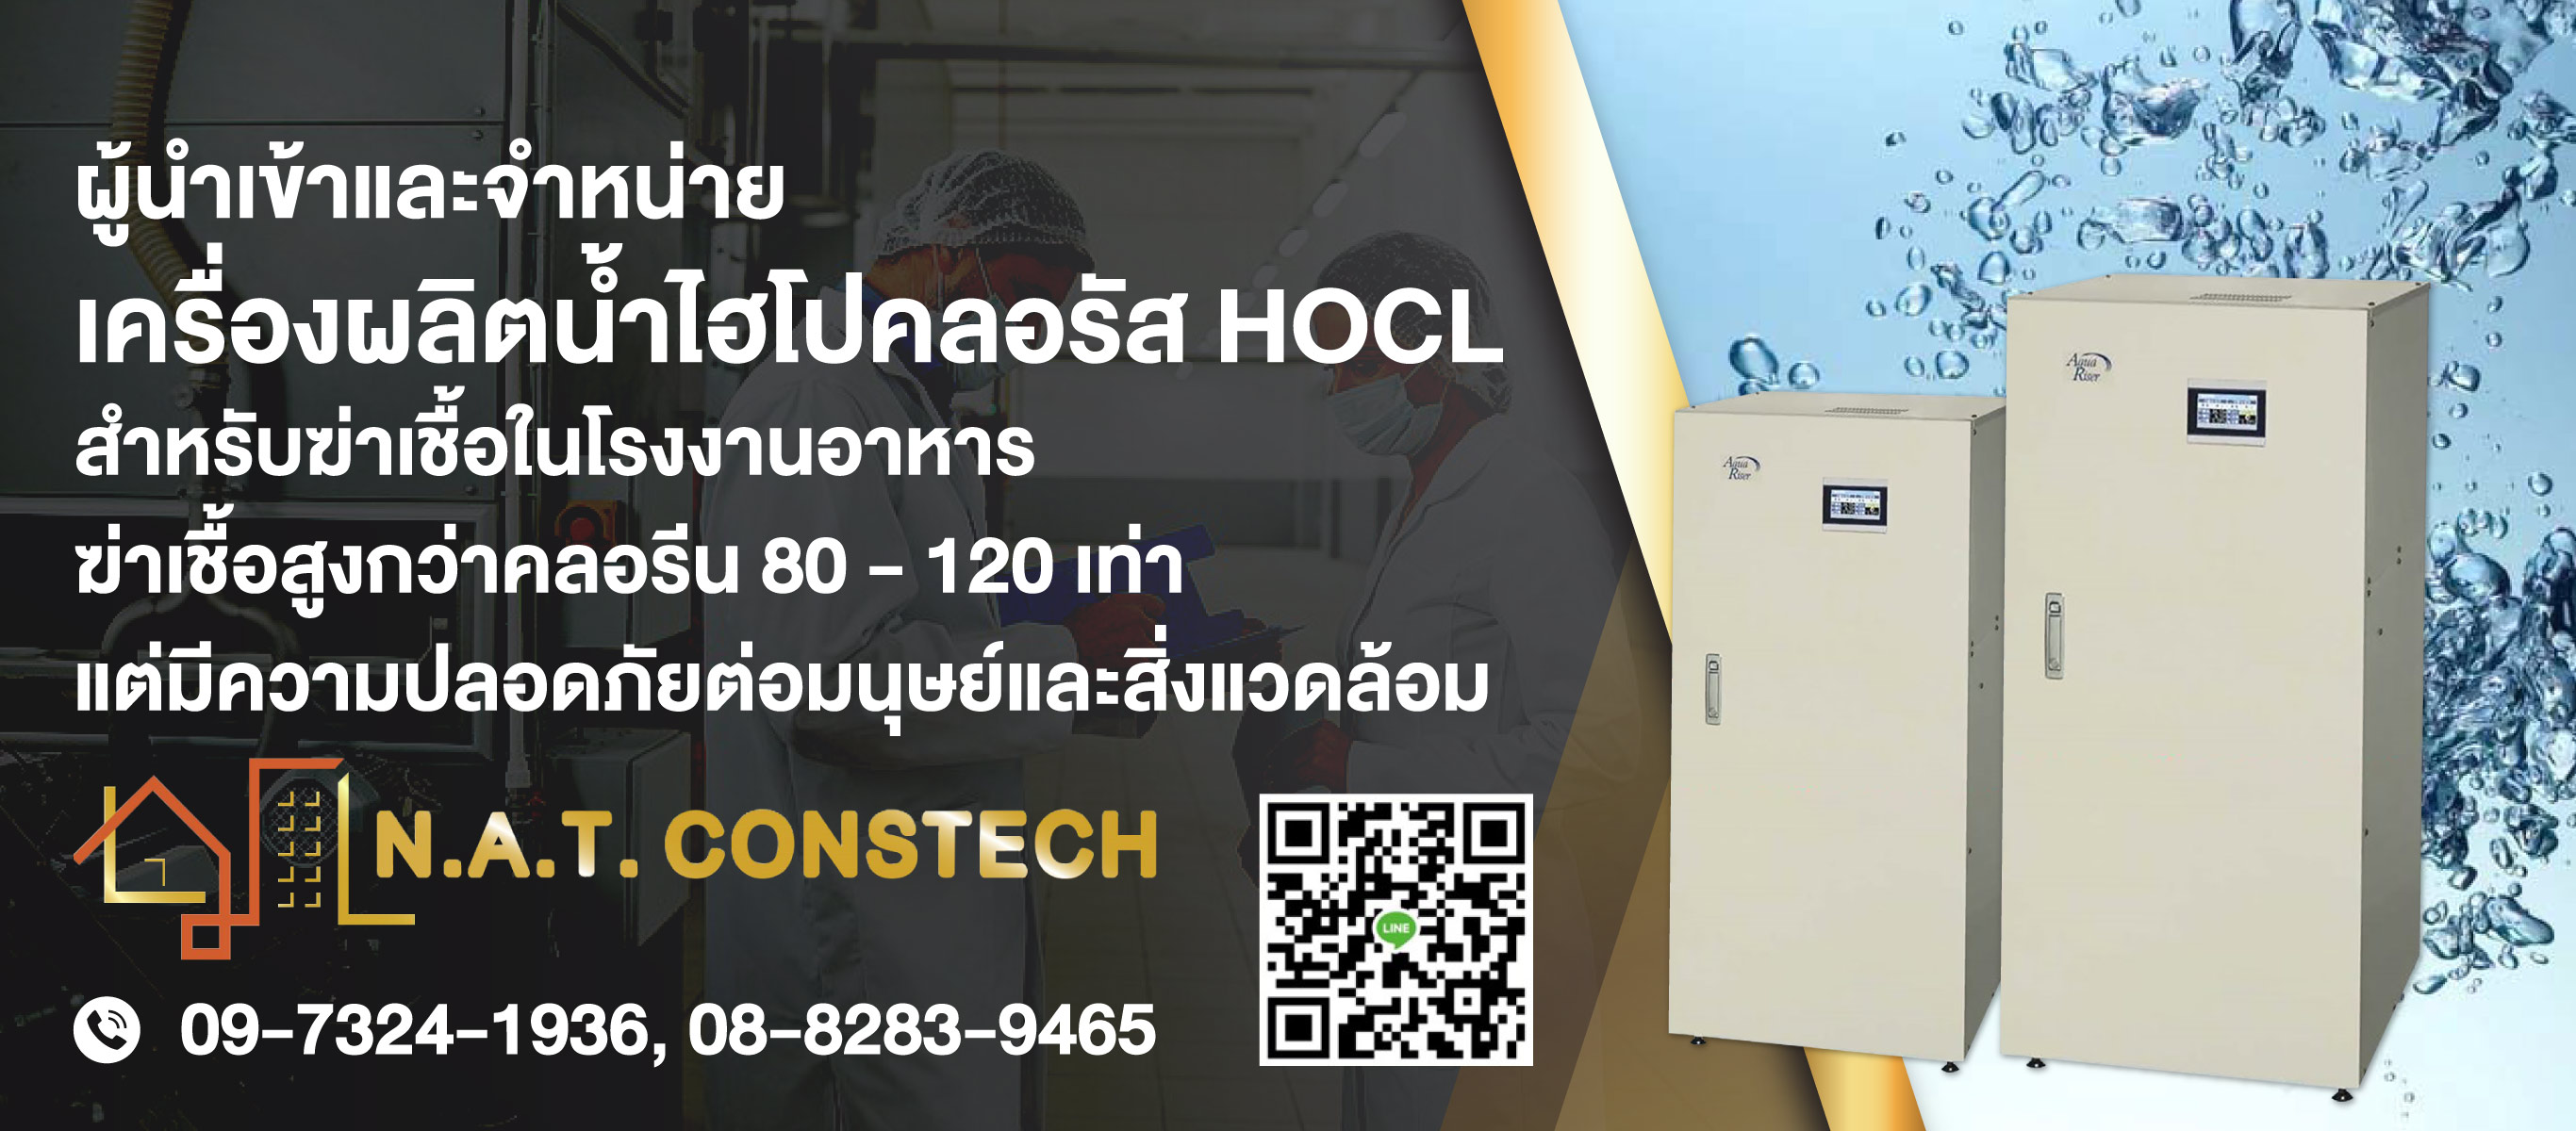 80013803-01-เครื่องผลิตน้ำไฮโปคลอรัส-HOCL